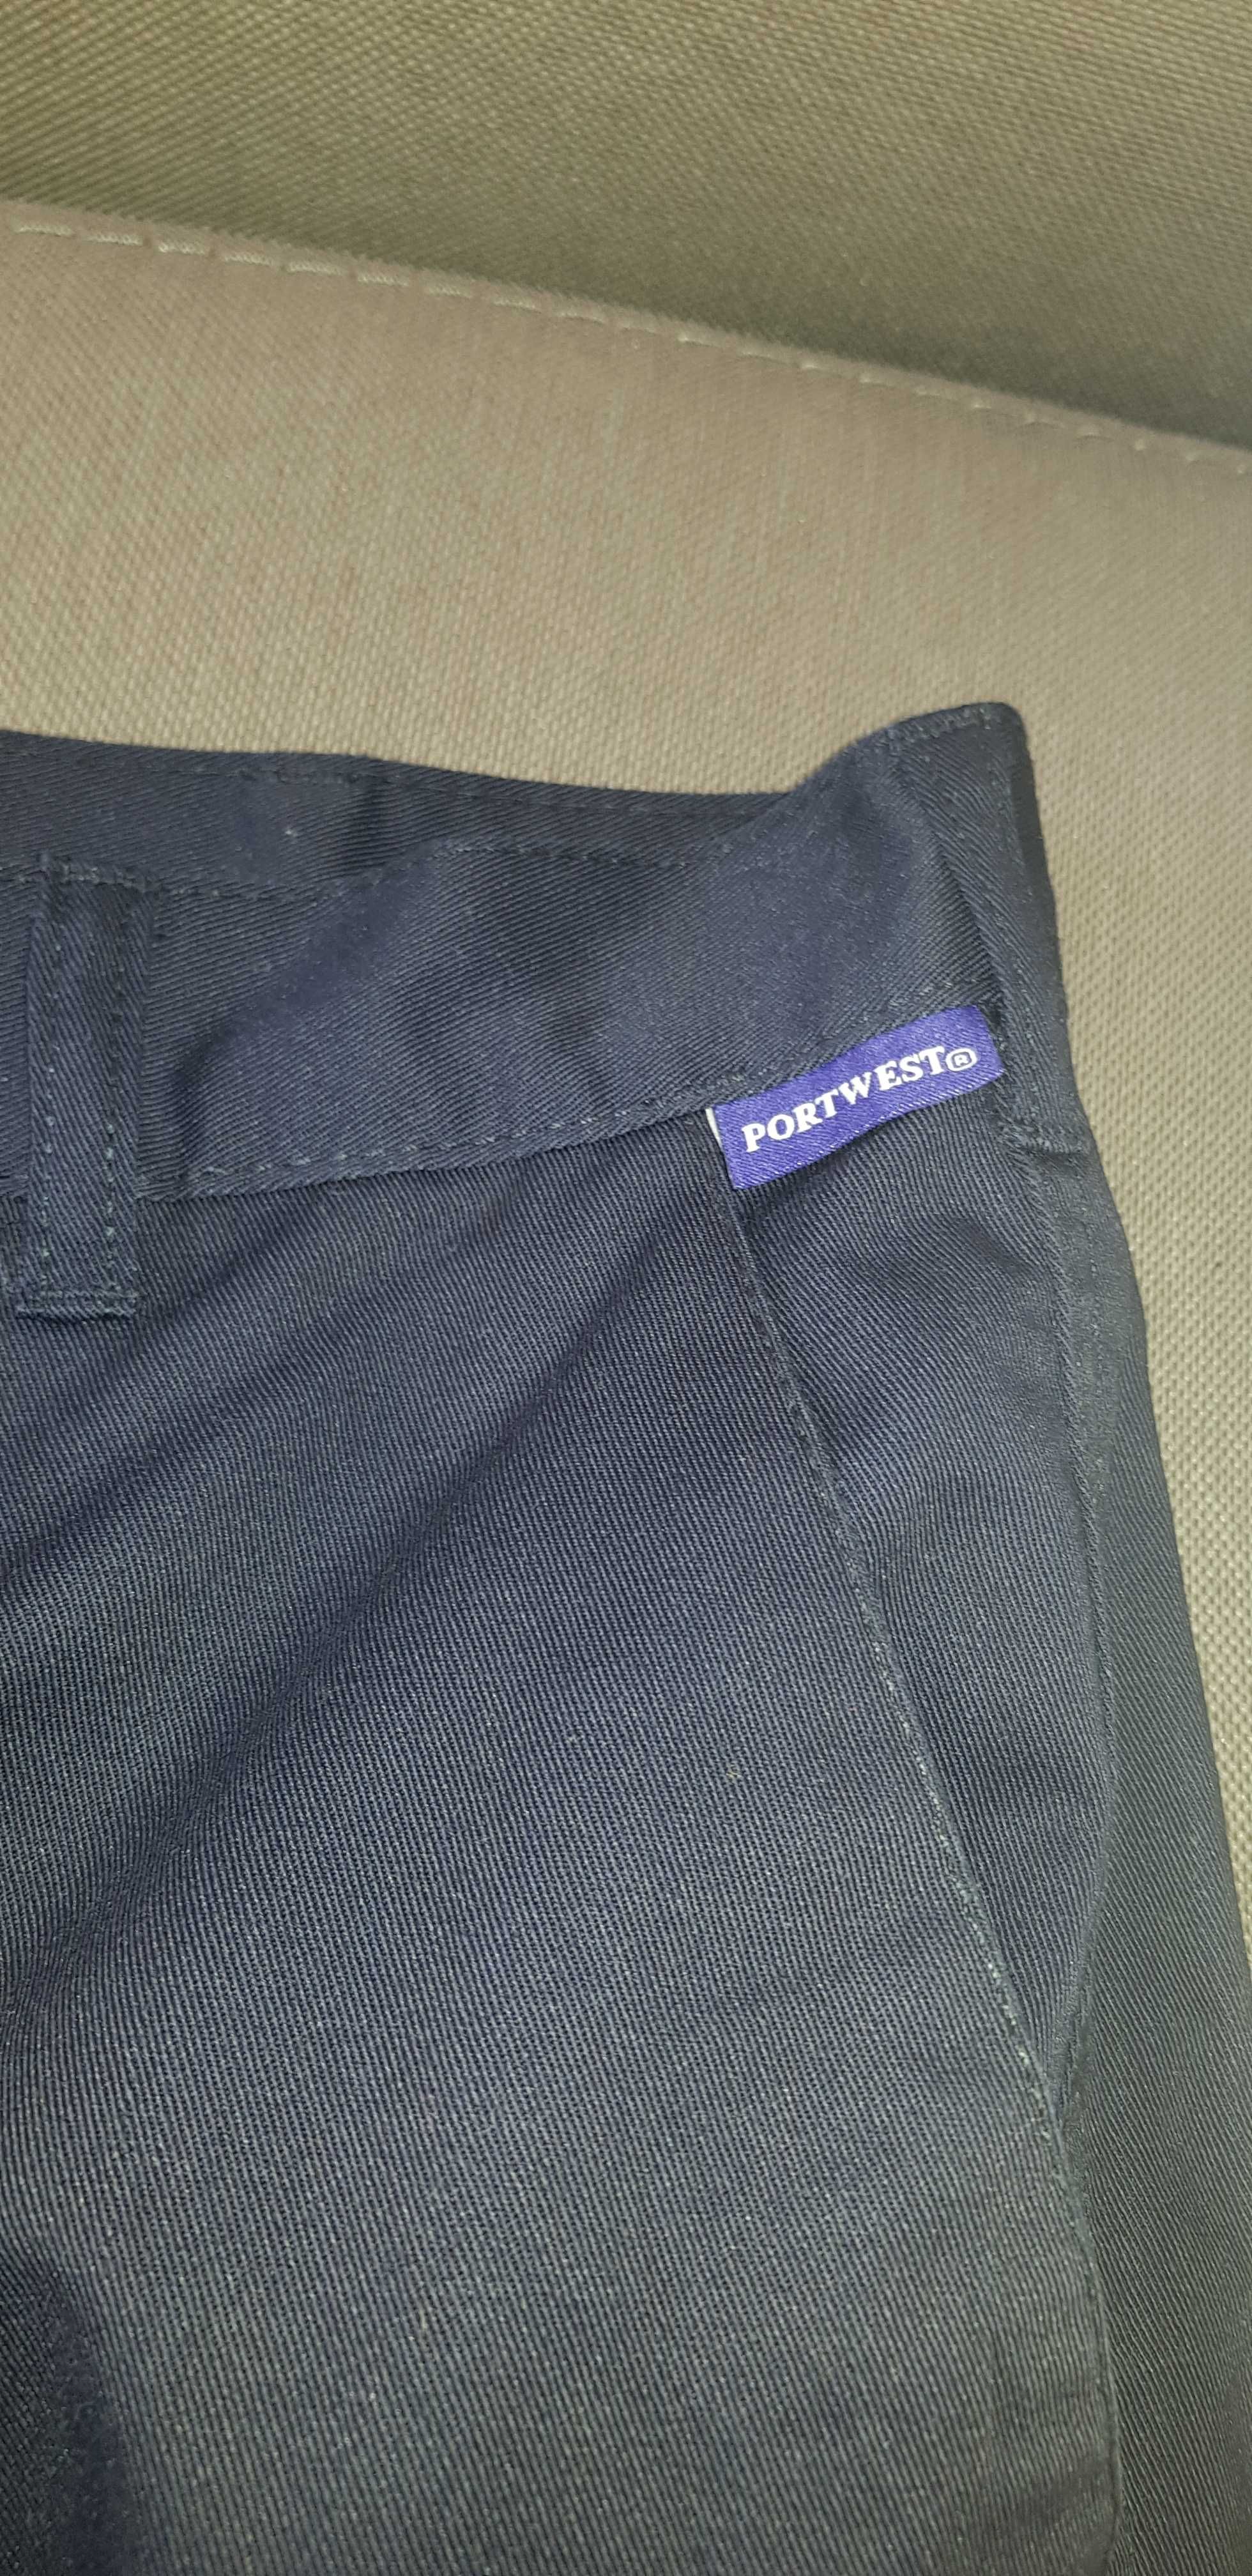 Spodnie męskie marki Portwest- rozmiar 46 -Nowe